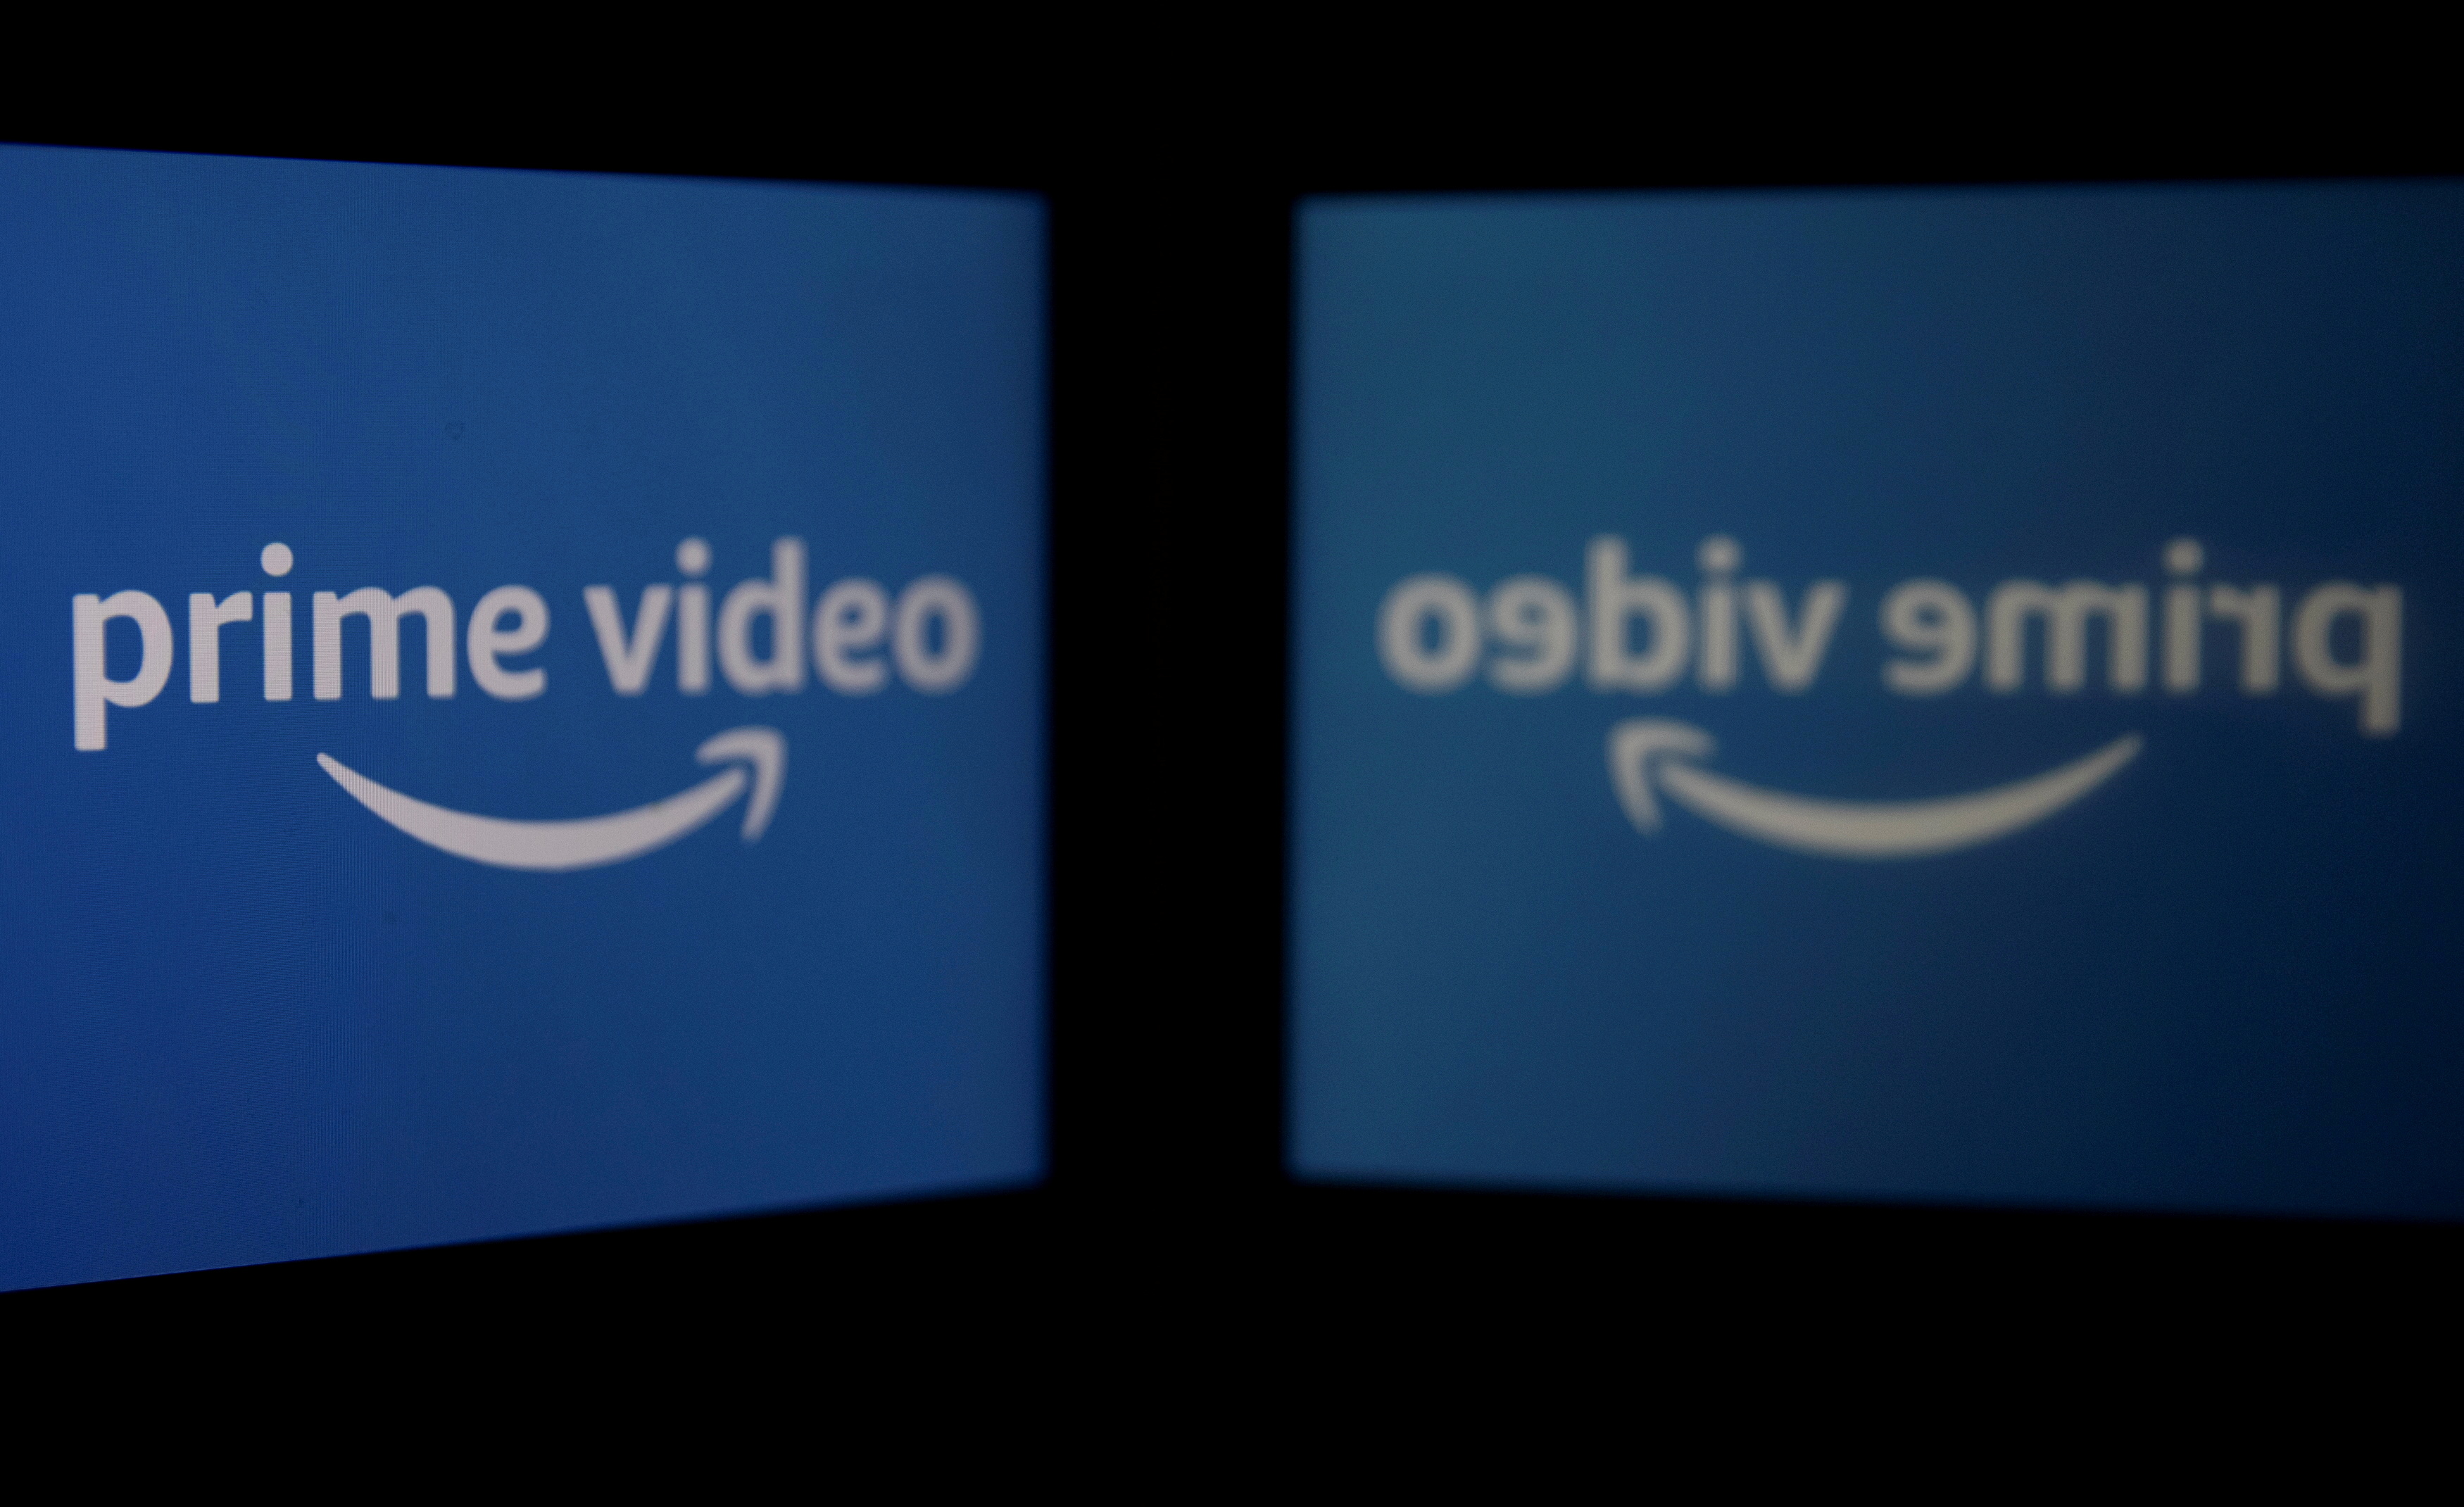 Amazon es una compañía estadounidense de comercio electrónico que también ha entrado a la batalla por el streaming con Prime Video. (REUTERS/Danish Siddiqui)